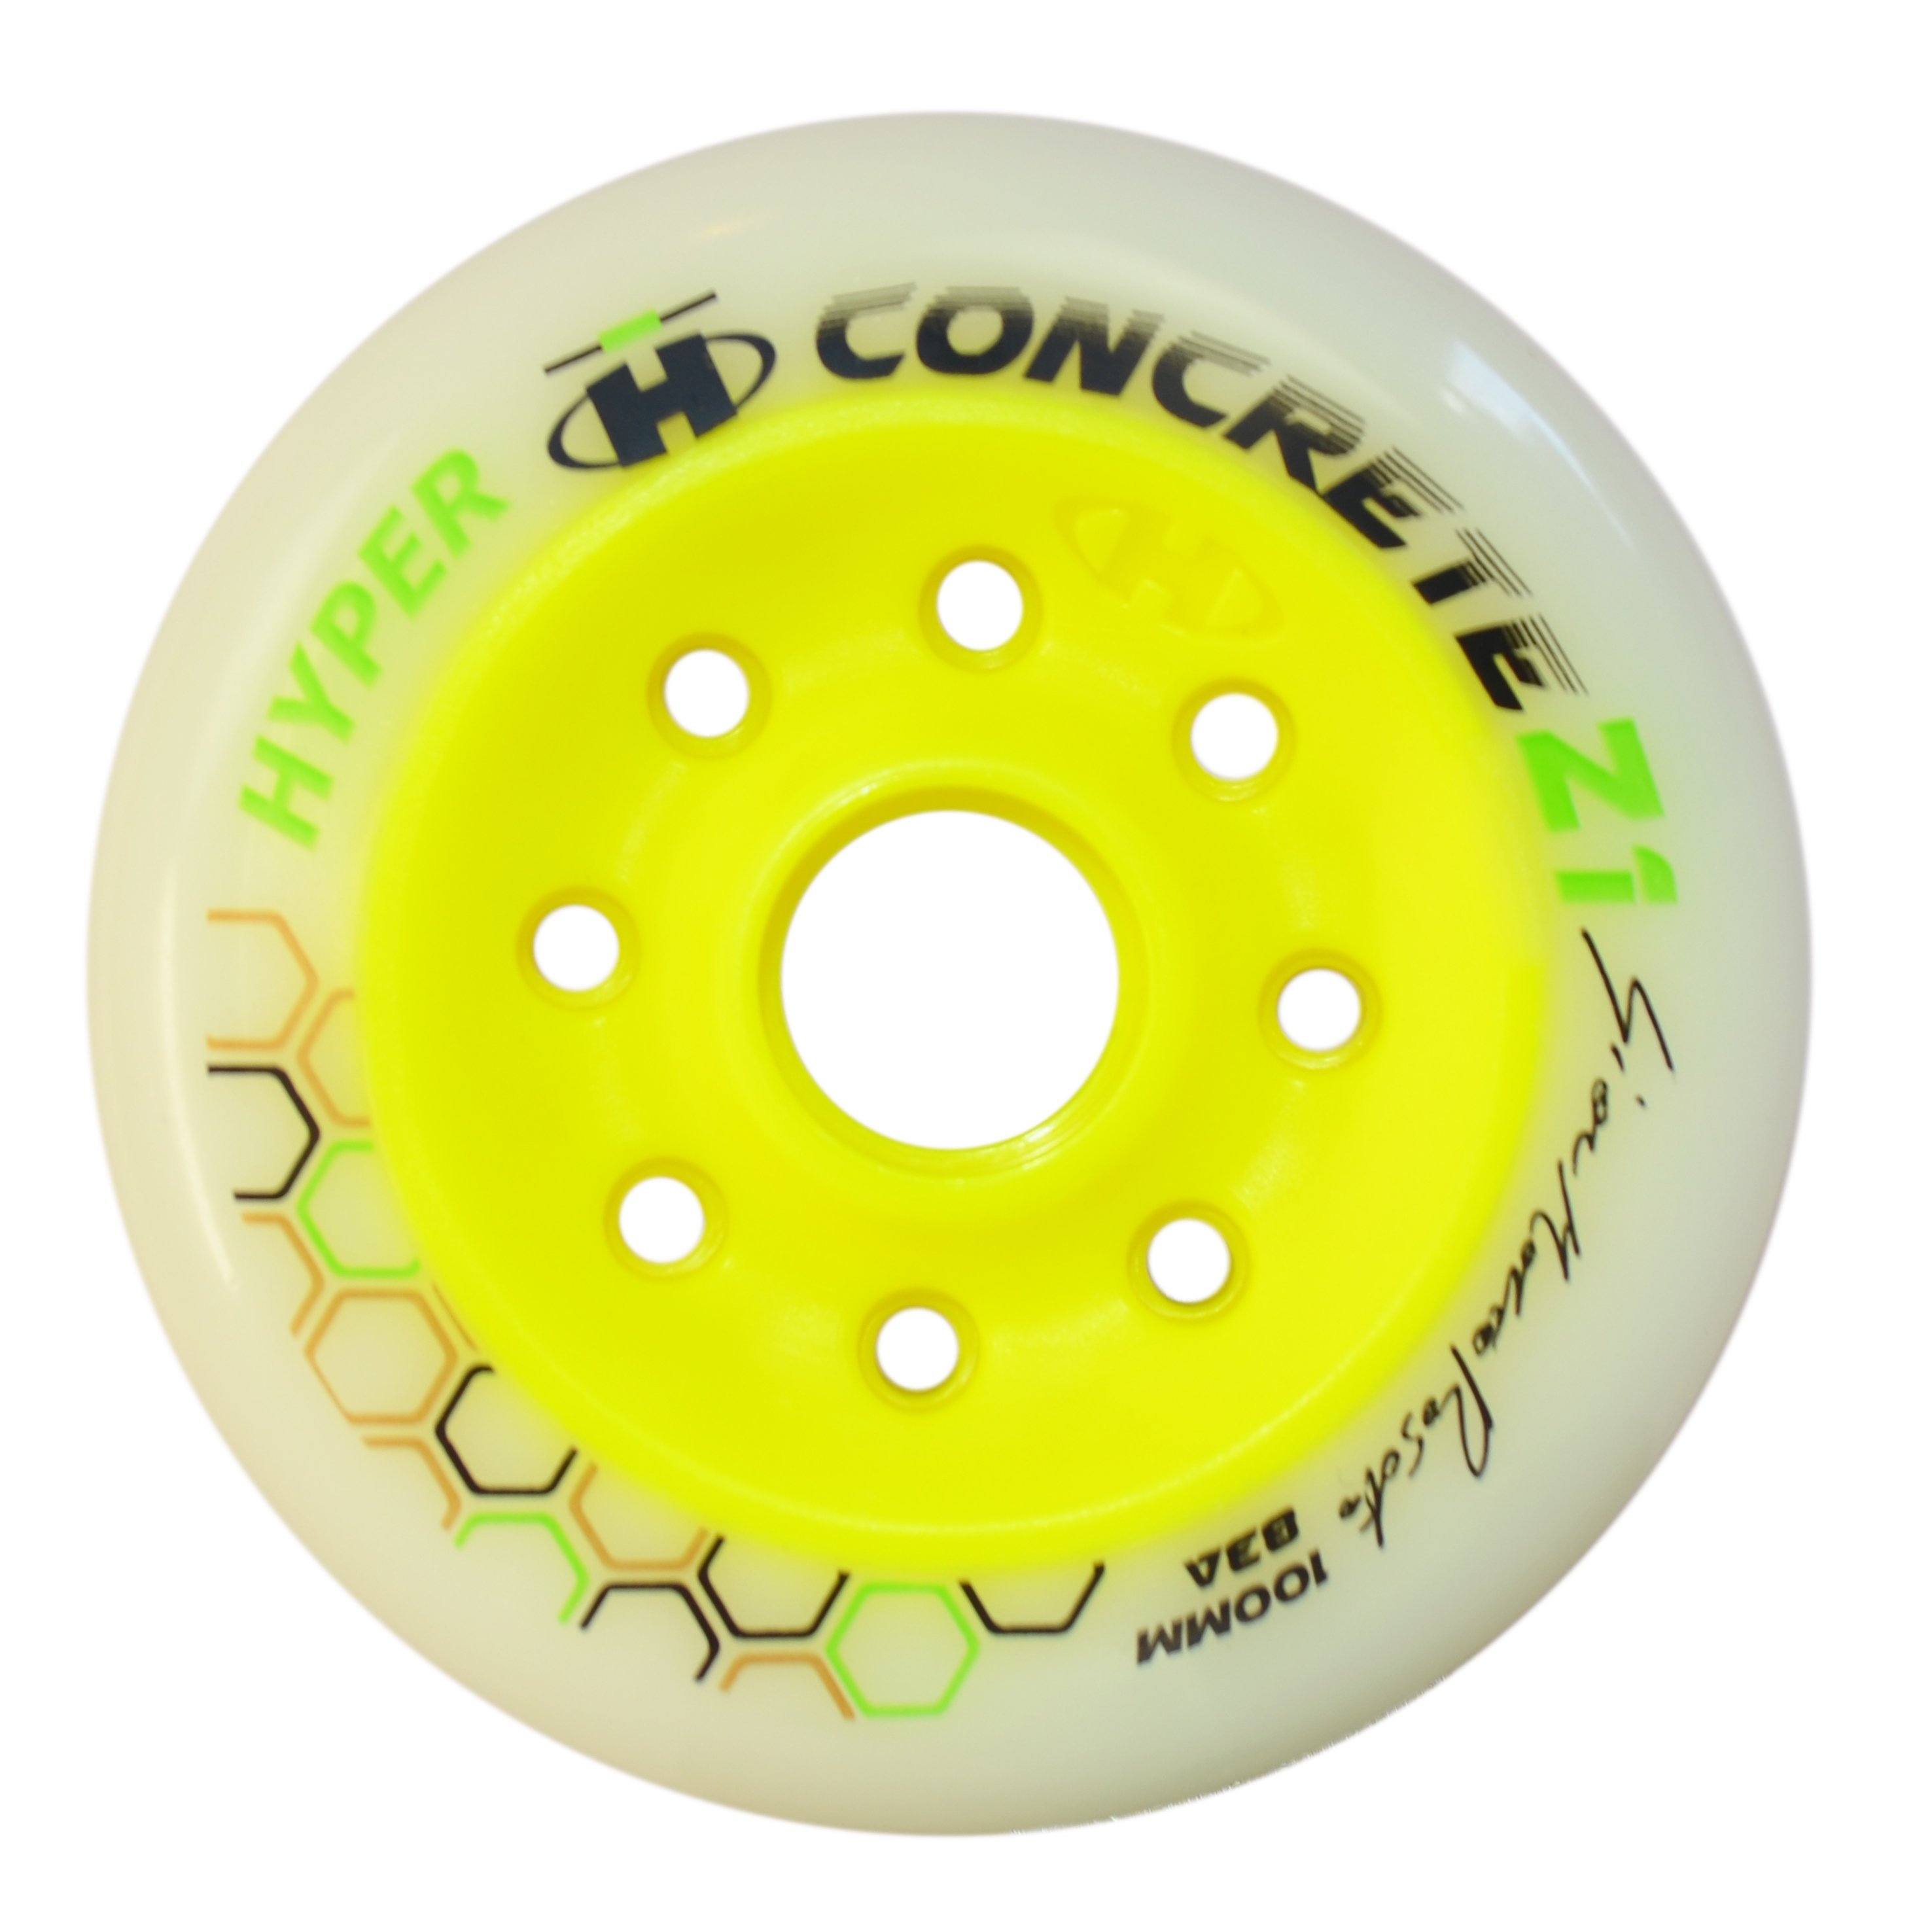 HYPER Concrete Z1 ROSATO 100MM White/Yellow (2 units) 83A